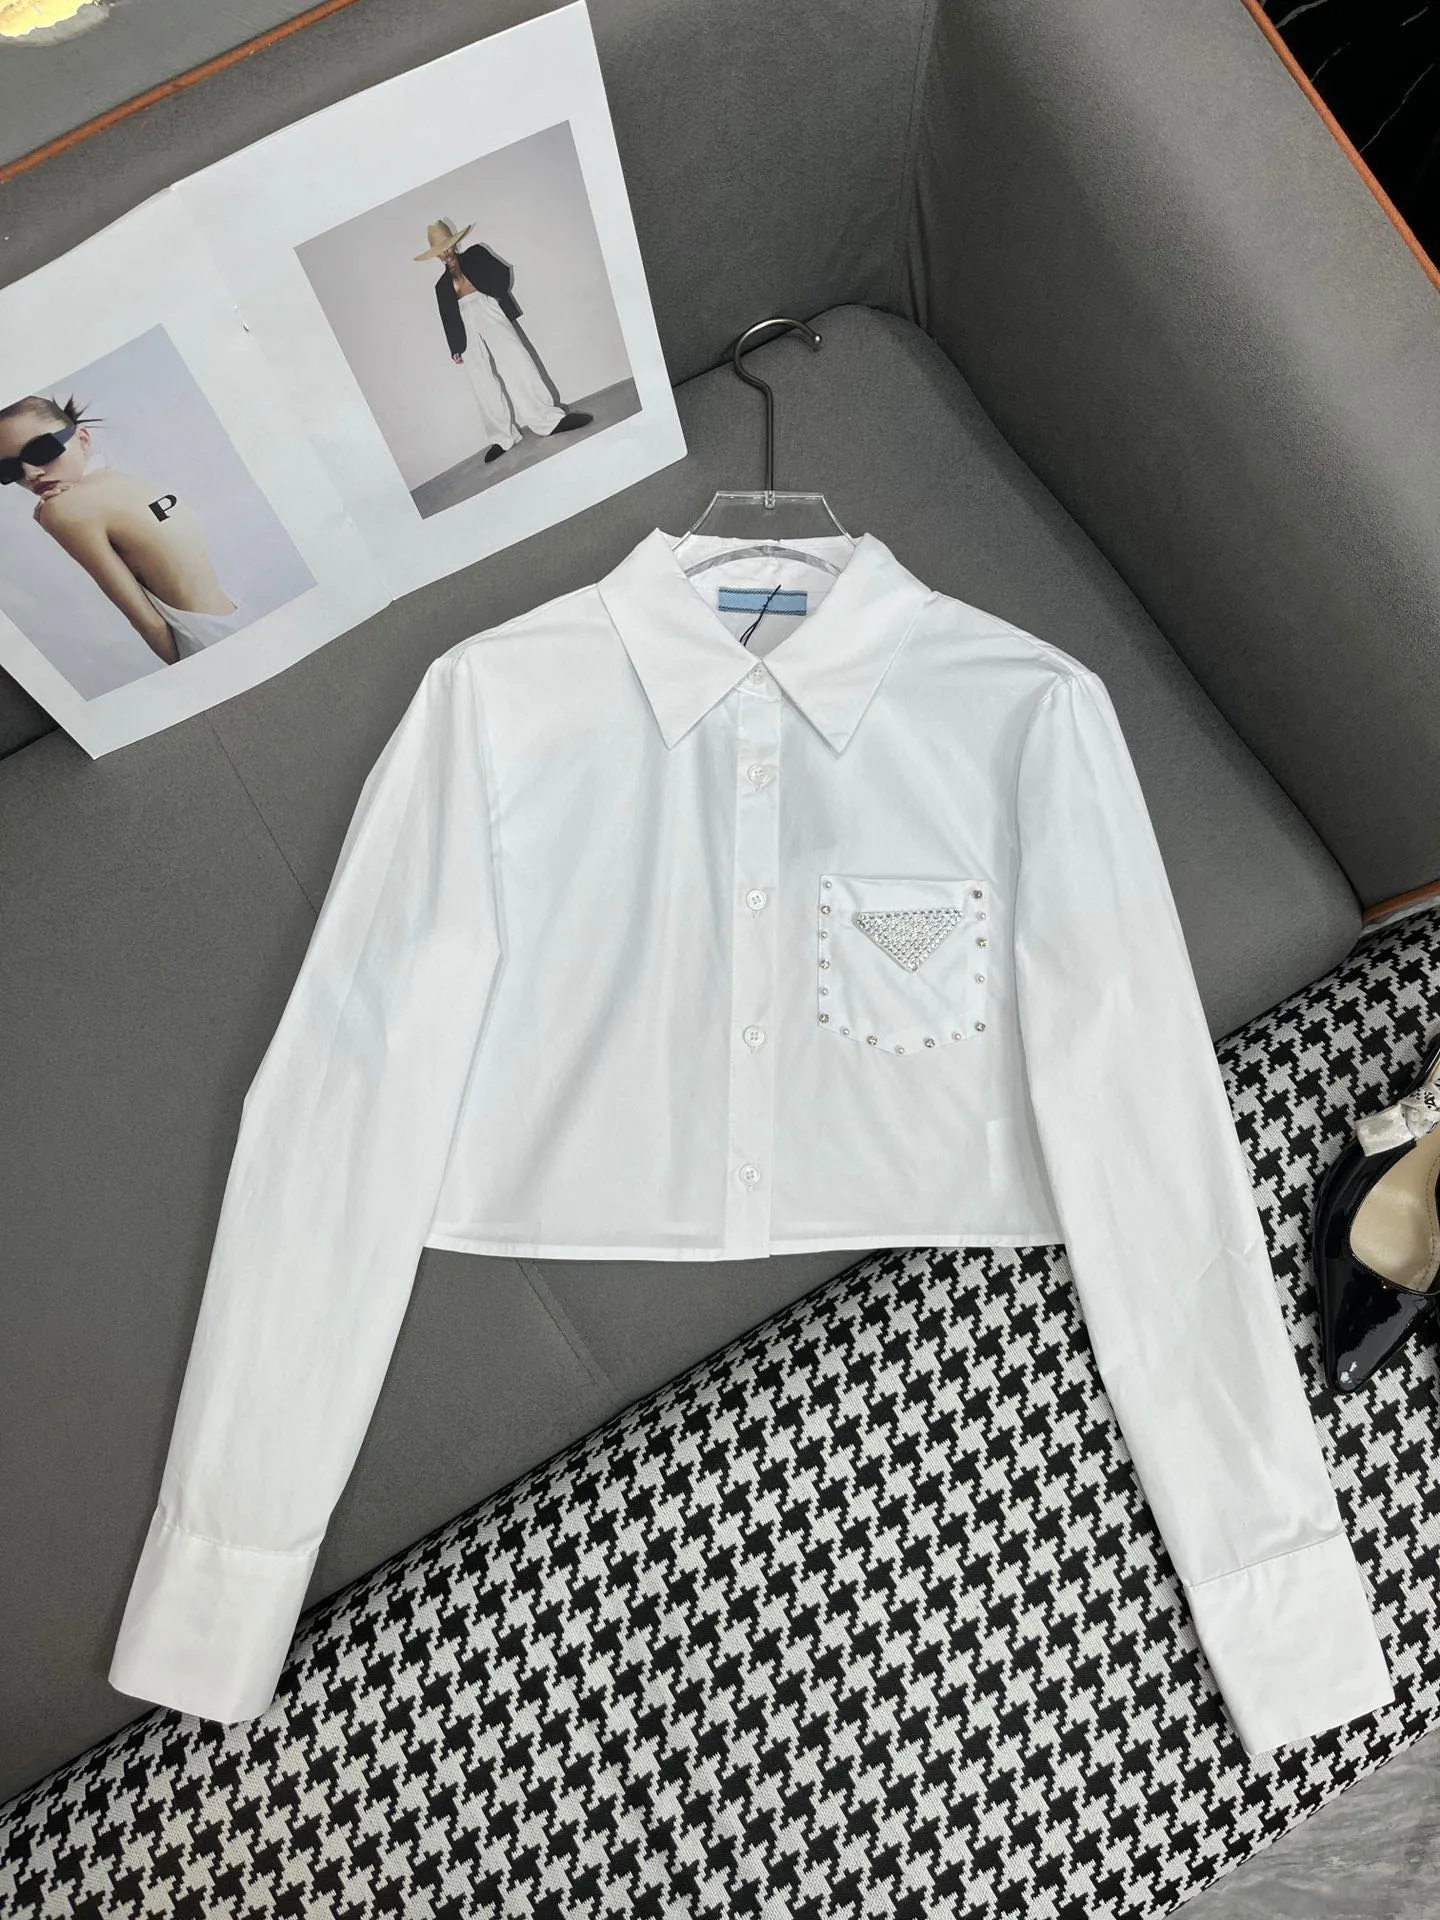 Avancerad designkänsla långärmad vit skjorta med paljettknapputsmyckningar för kvinnors skjortor